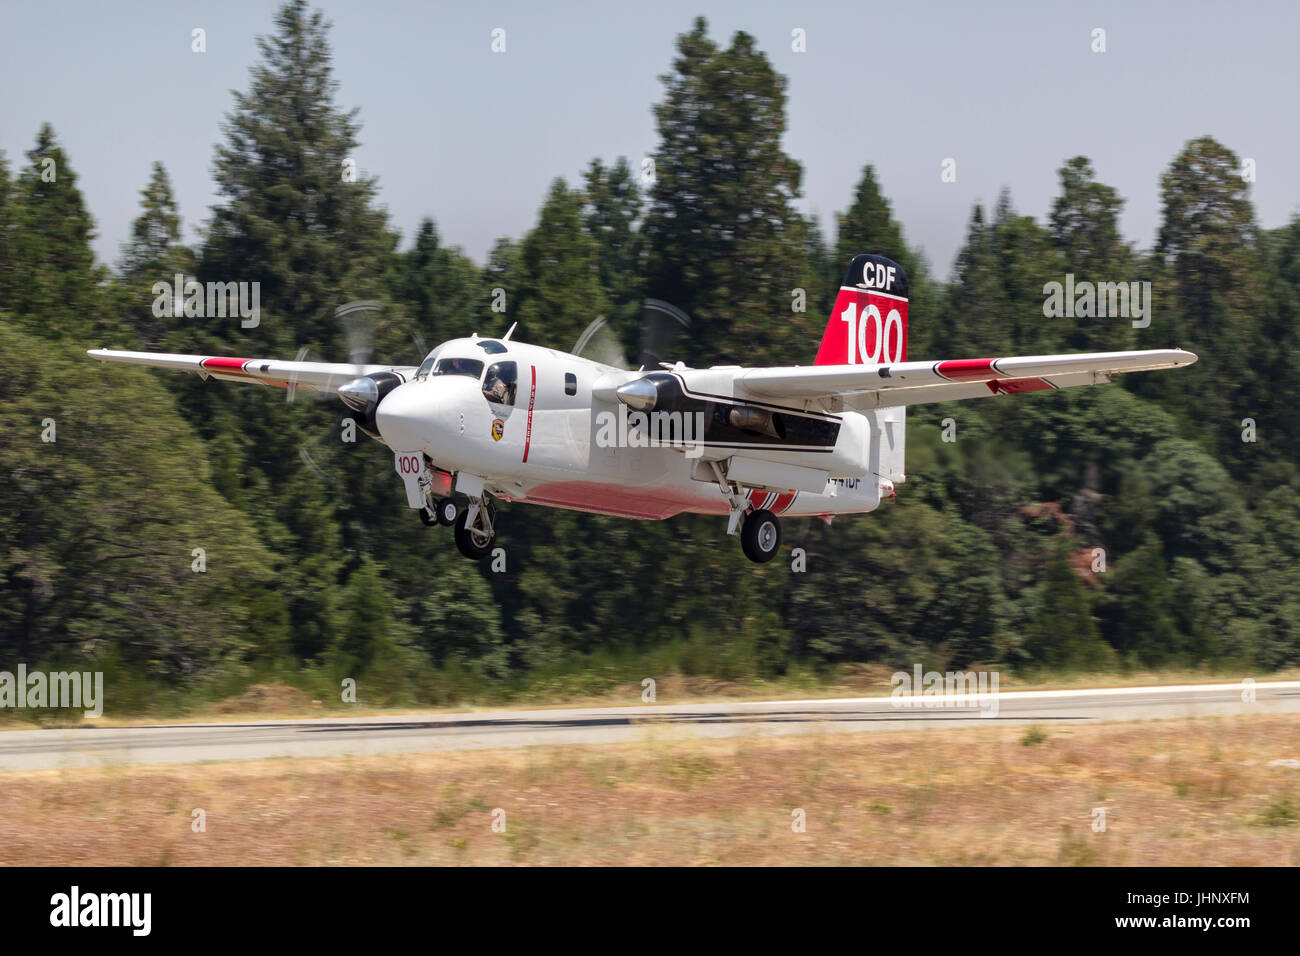 S-2F3À Tracker, CDF 100, obtient de l'aéroporté Air Base attaque Grass Valley en Californie du Nord en route vers une forêt. Banque D'Images